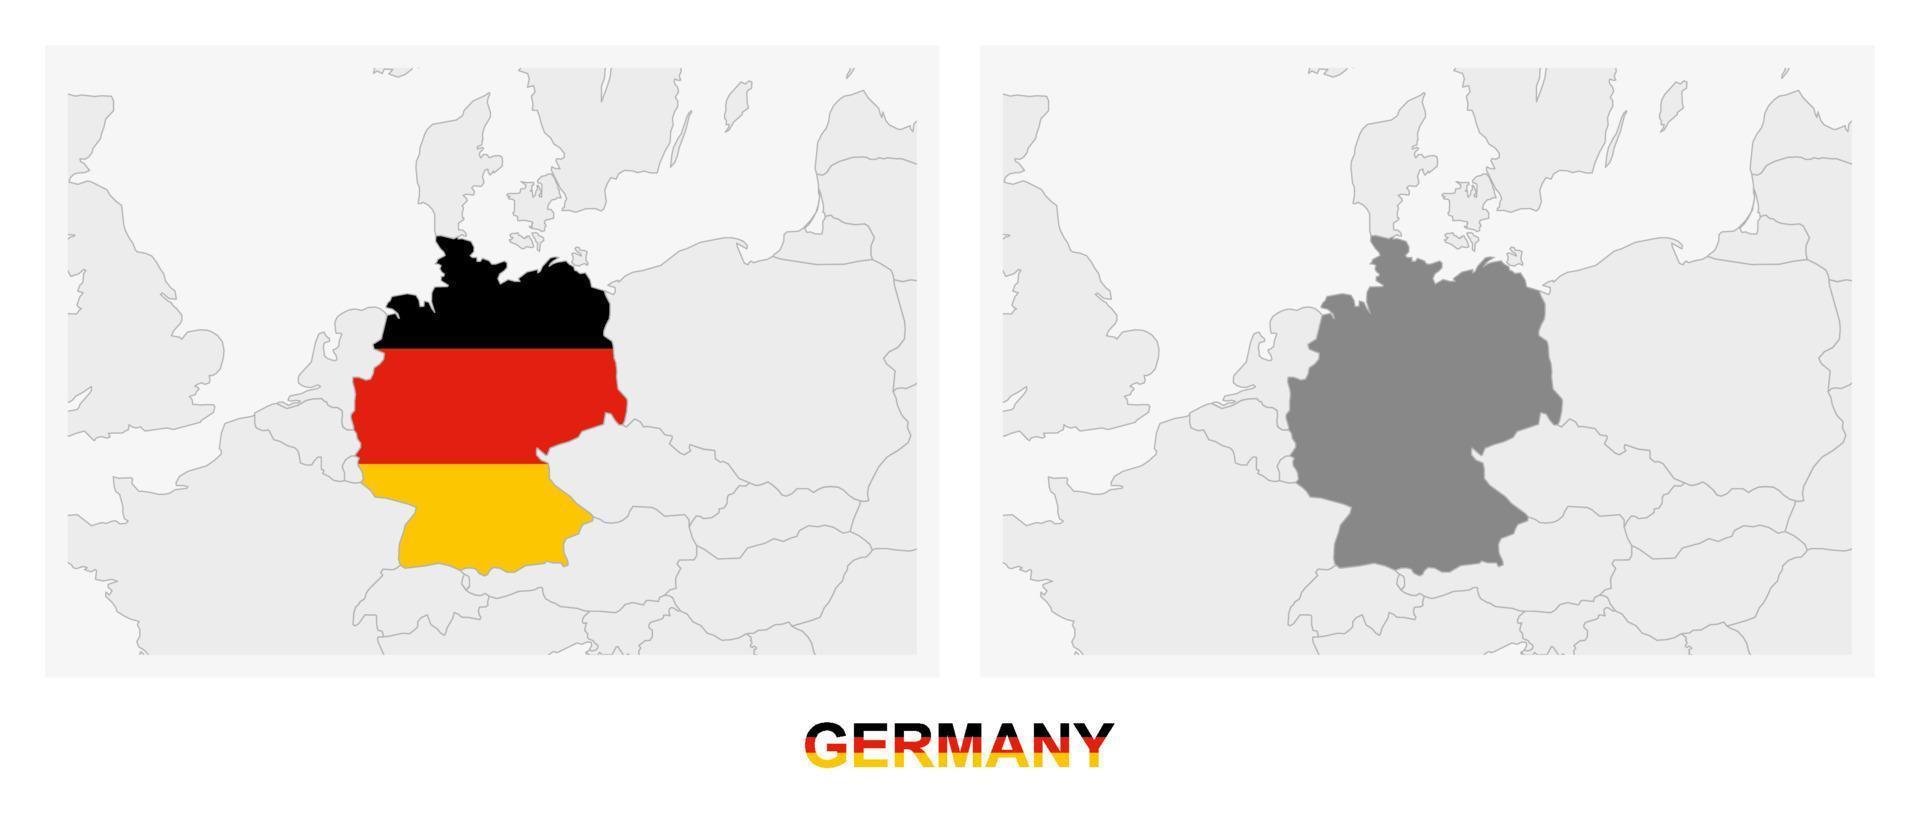 duas versões do mapa da alemanha, com a bandeira da alemanha e destaque em cinza escuro. vetor